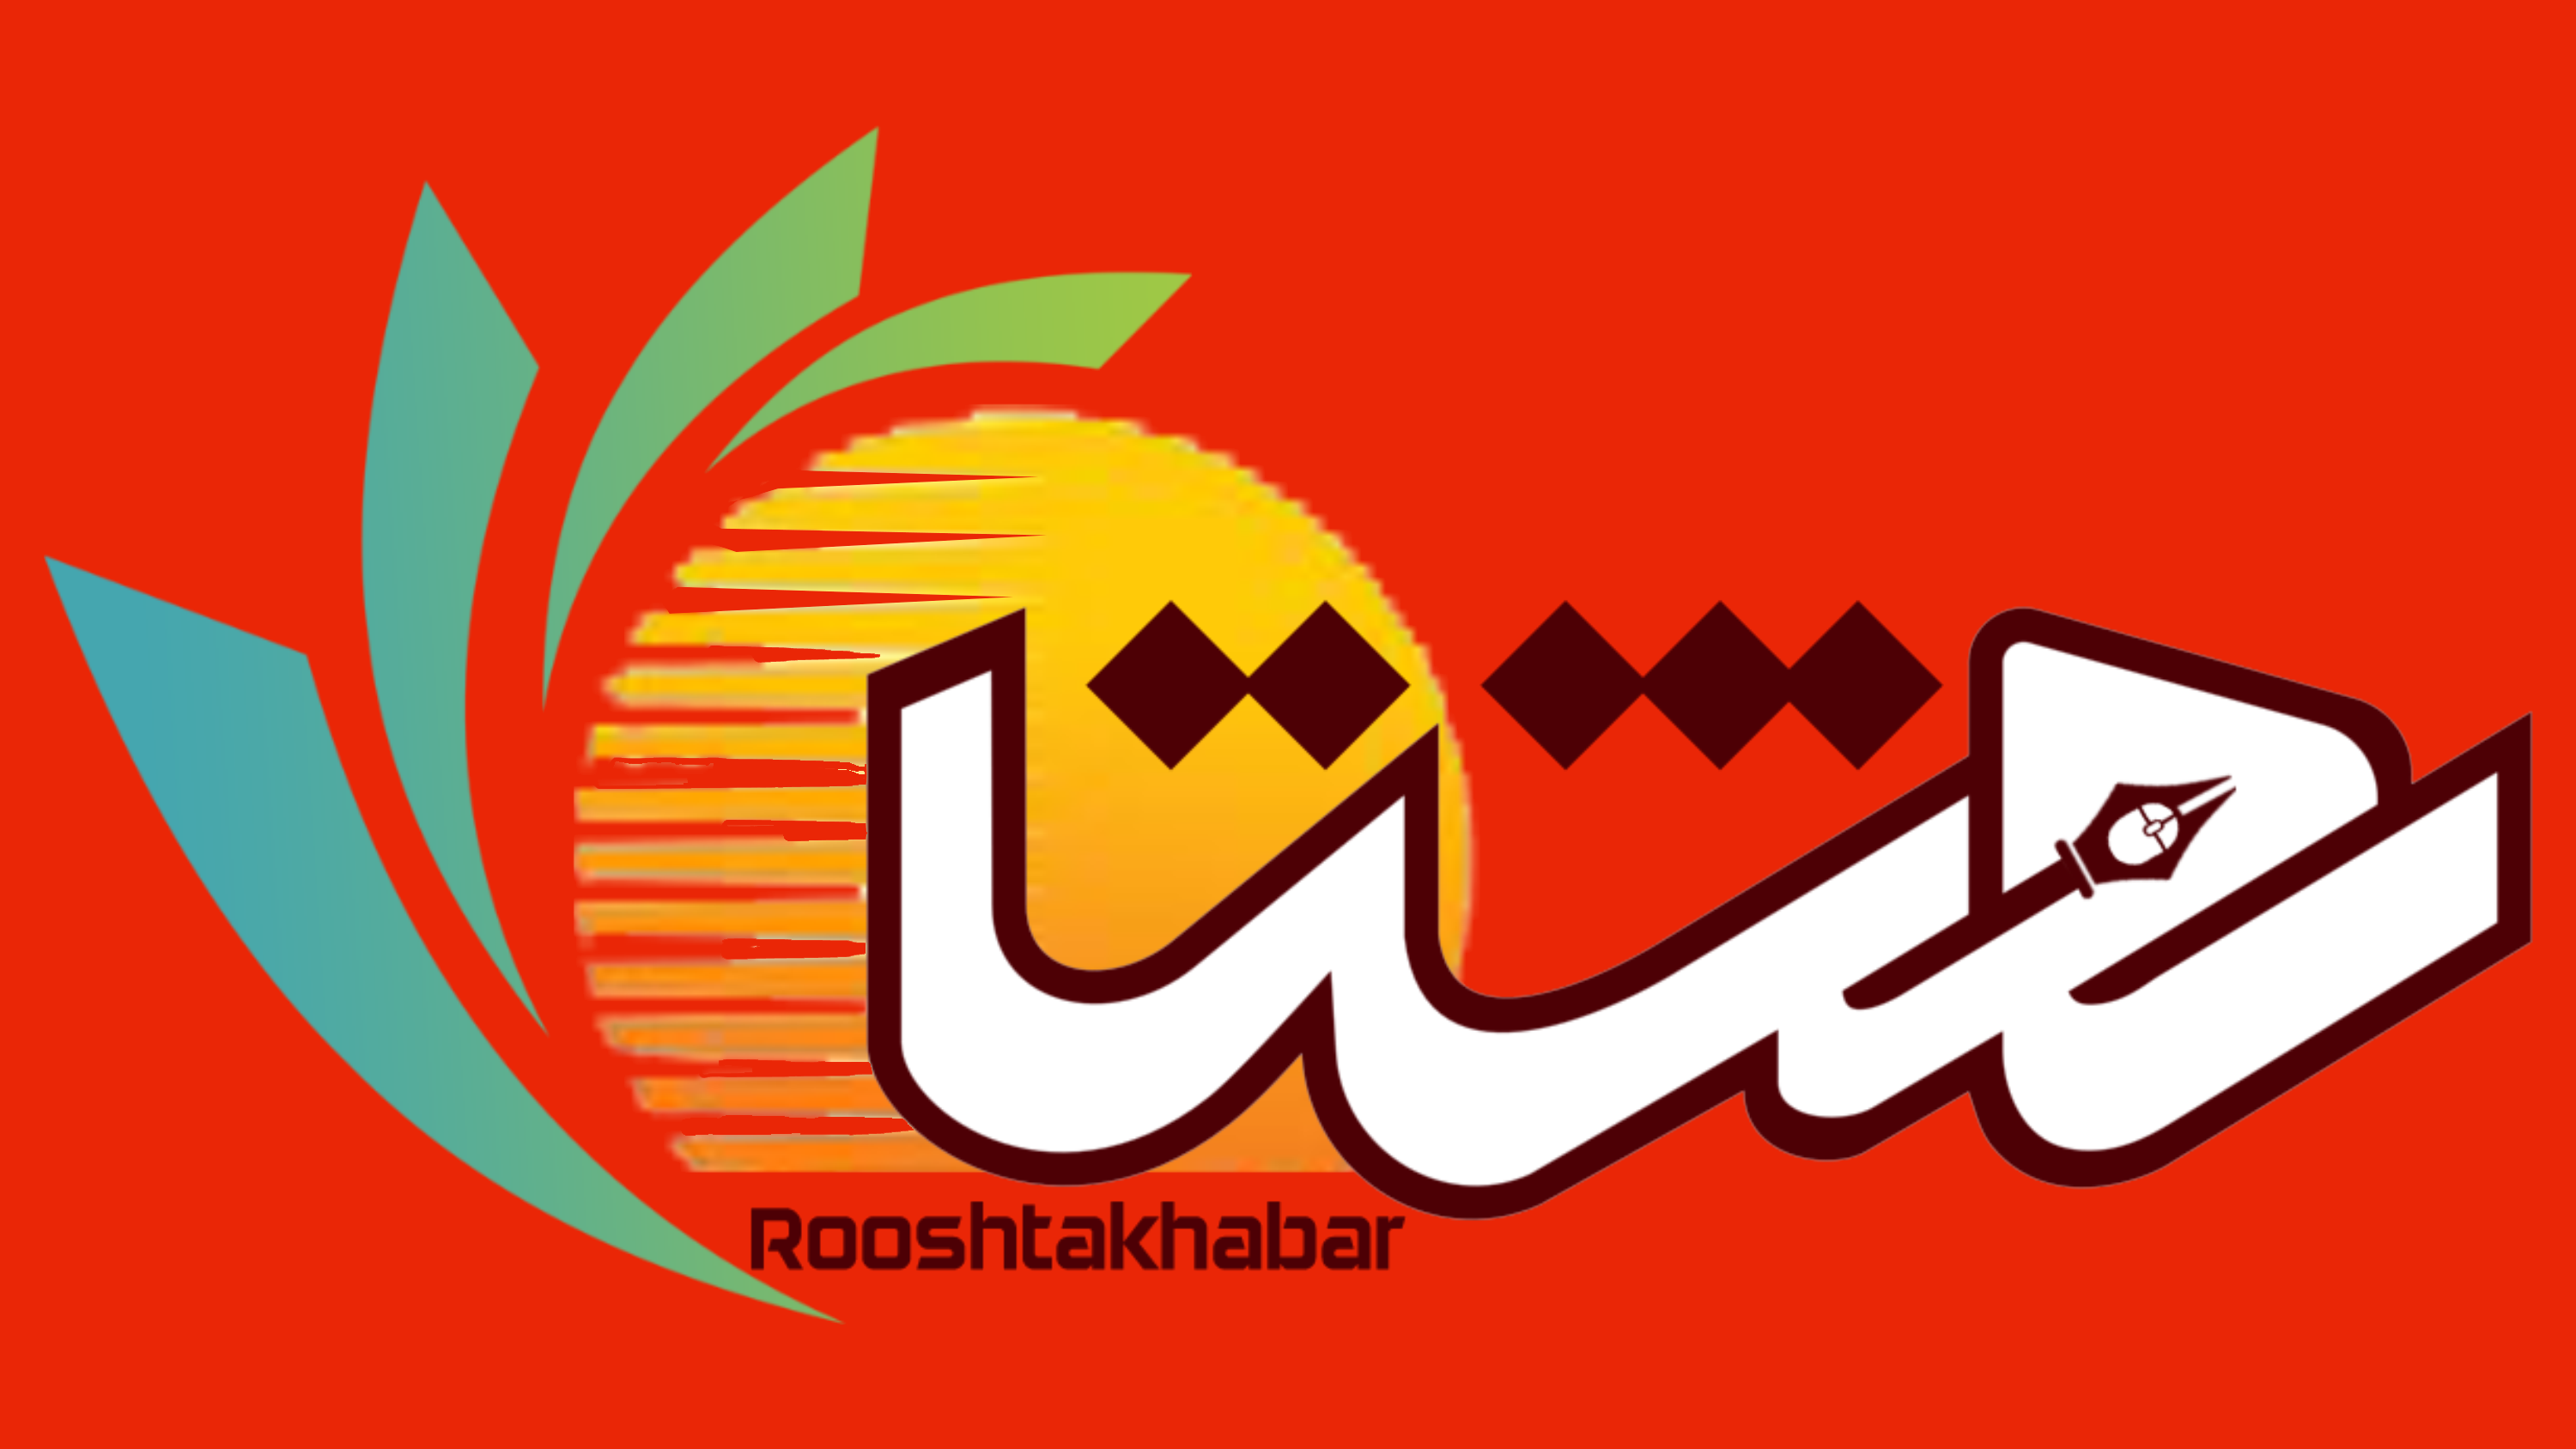 www.rooshtakhabar.ir